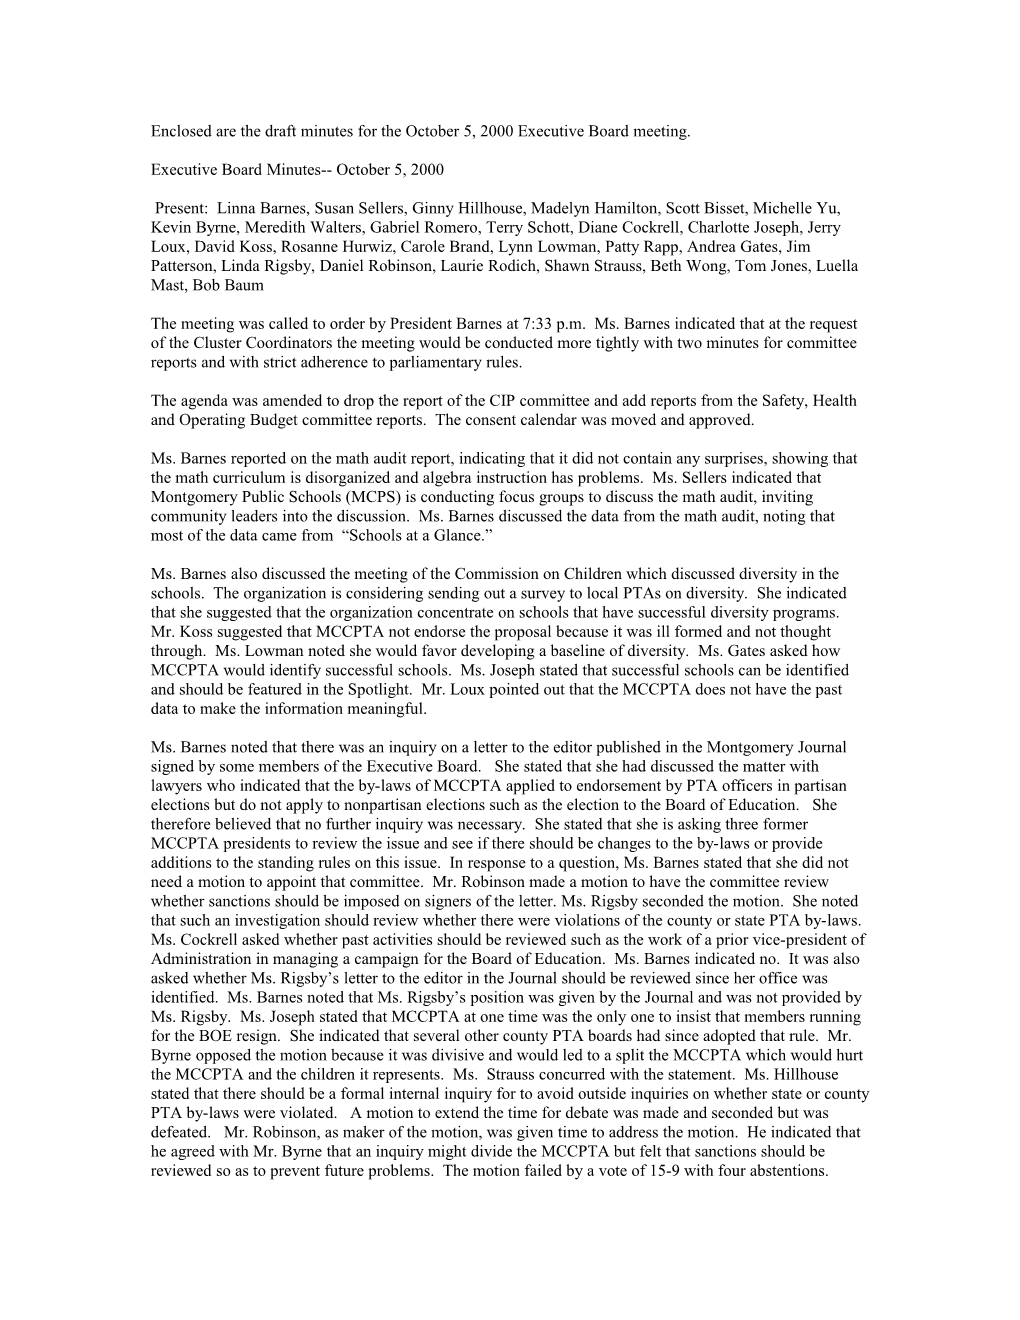 MCCPTA Executive Board Minutes October 5, 2000